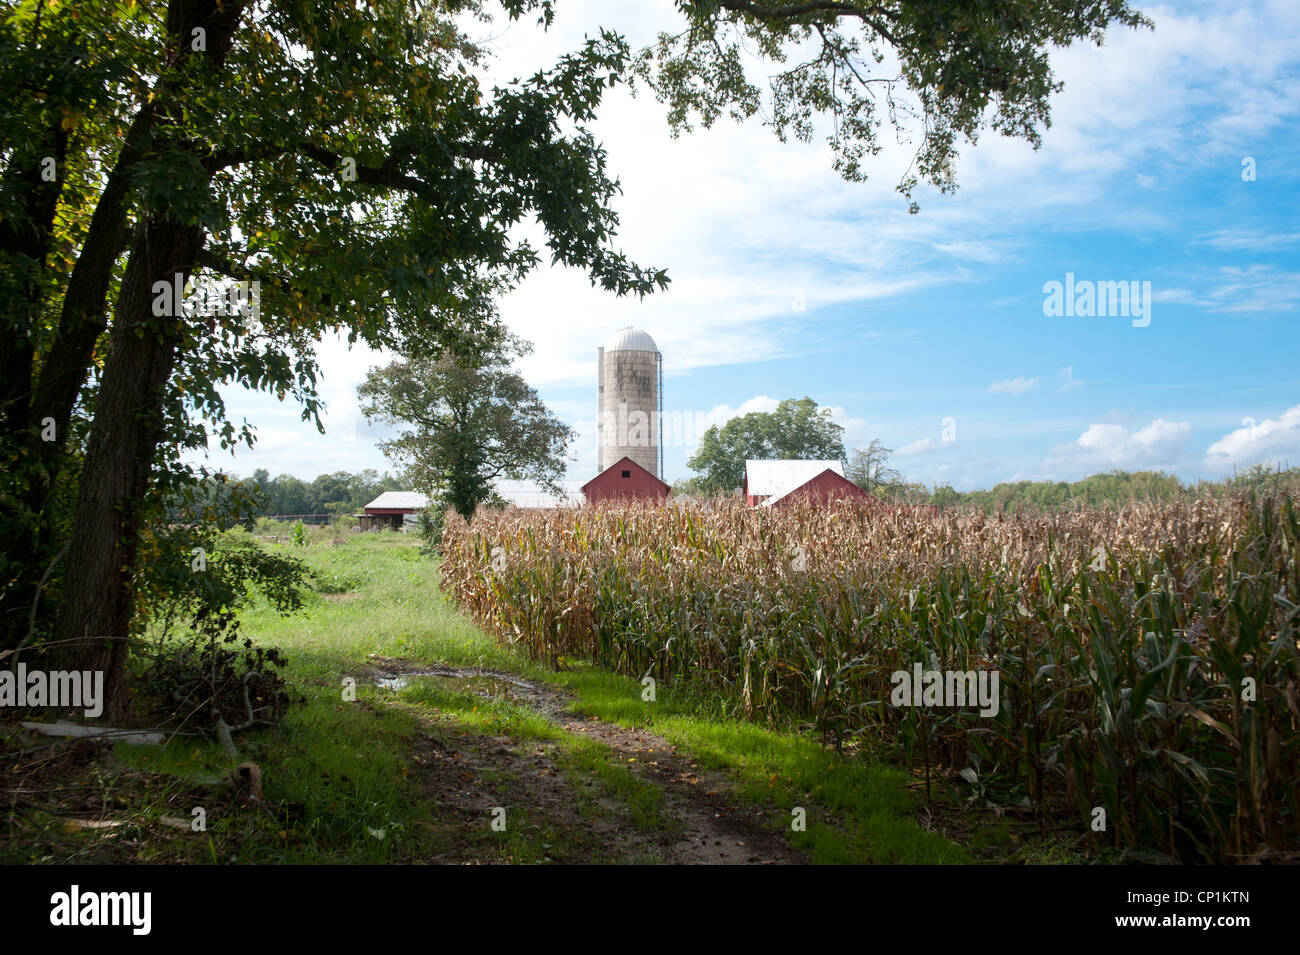 Bauernhof mit Silo, rote Scheune, Baum und Mais-Feld Stockfoto